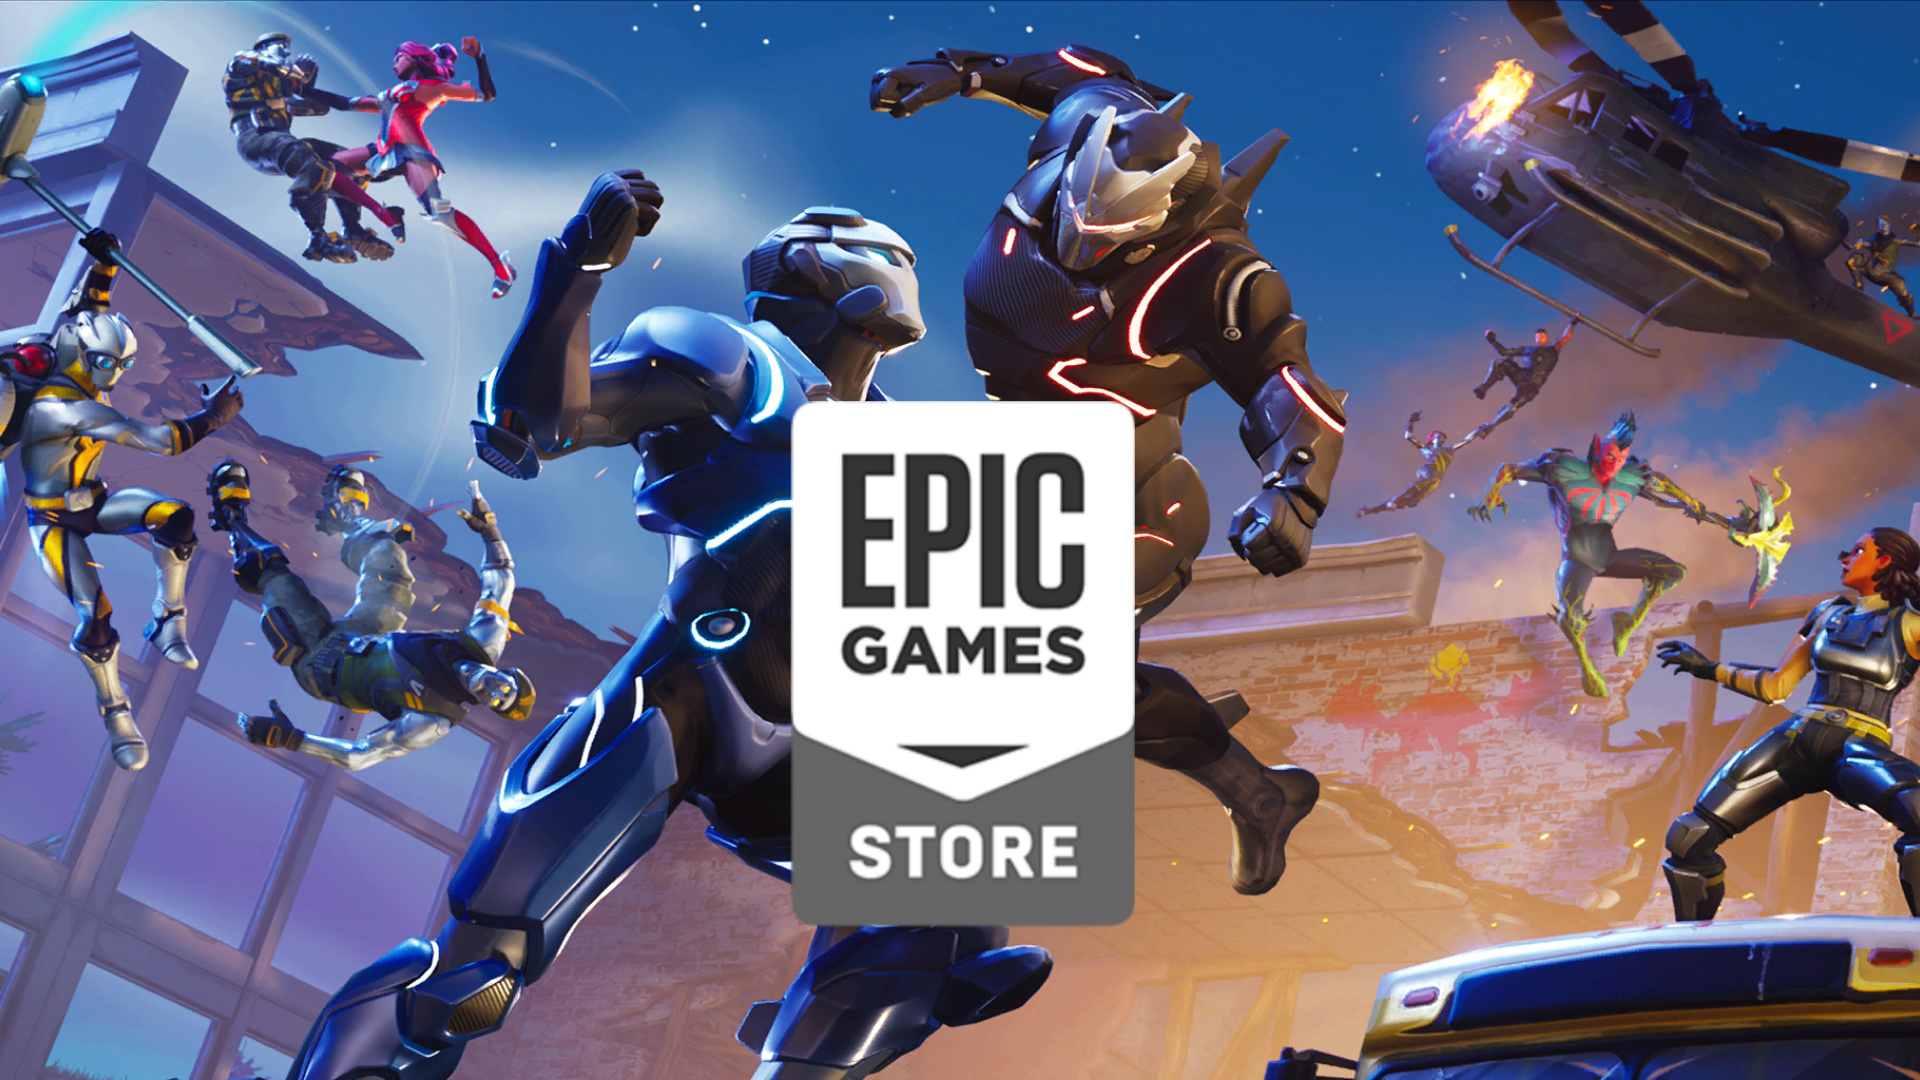 "Epic" žaidimų parduotuvė